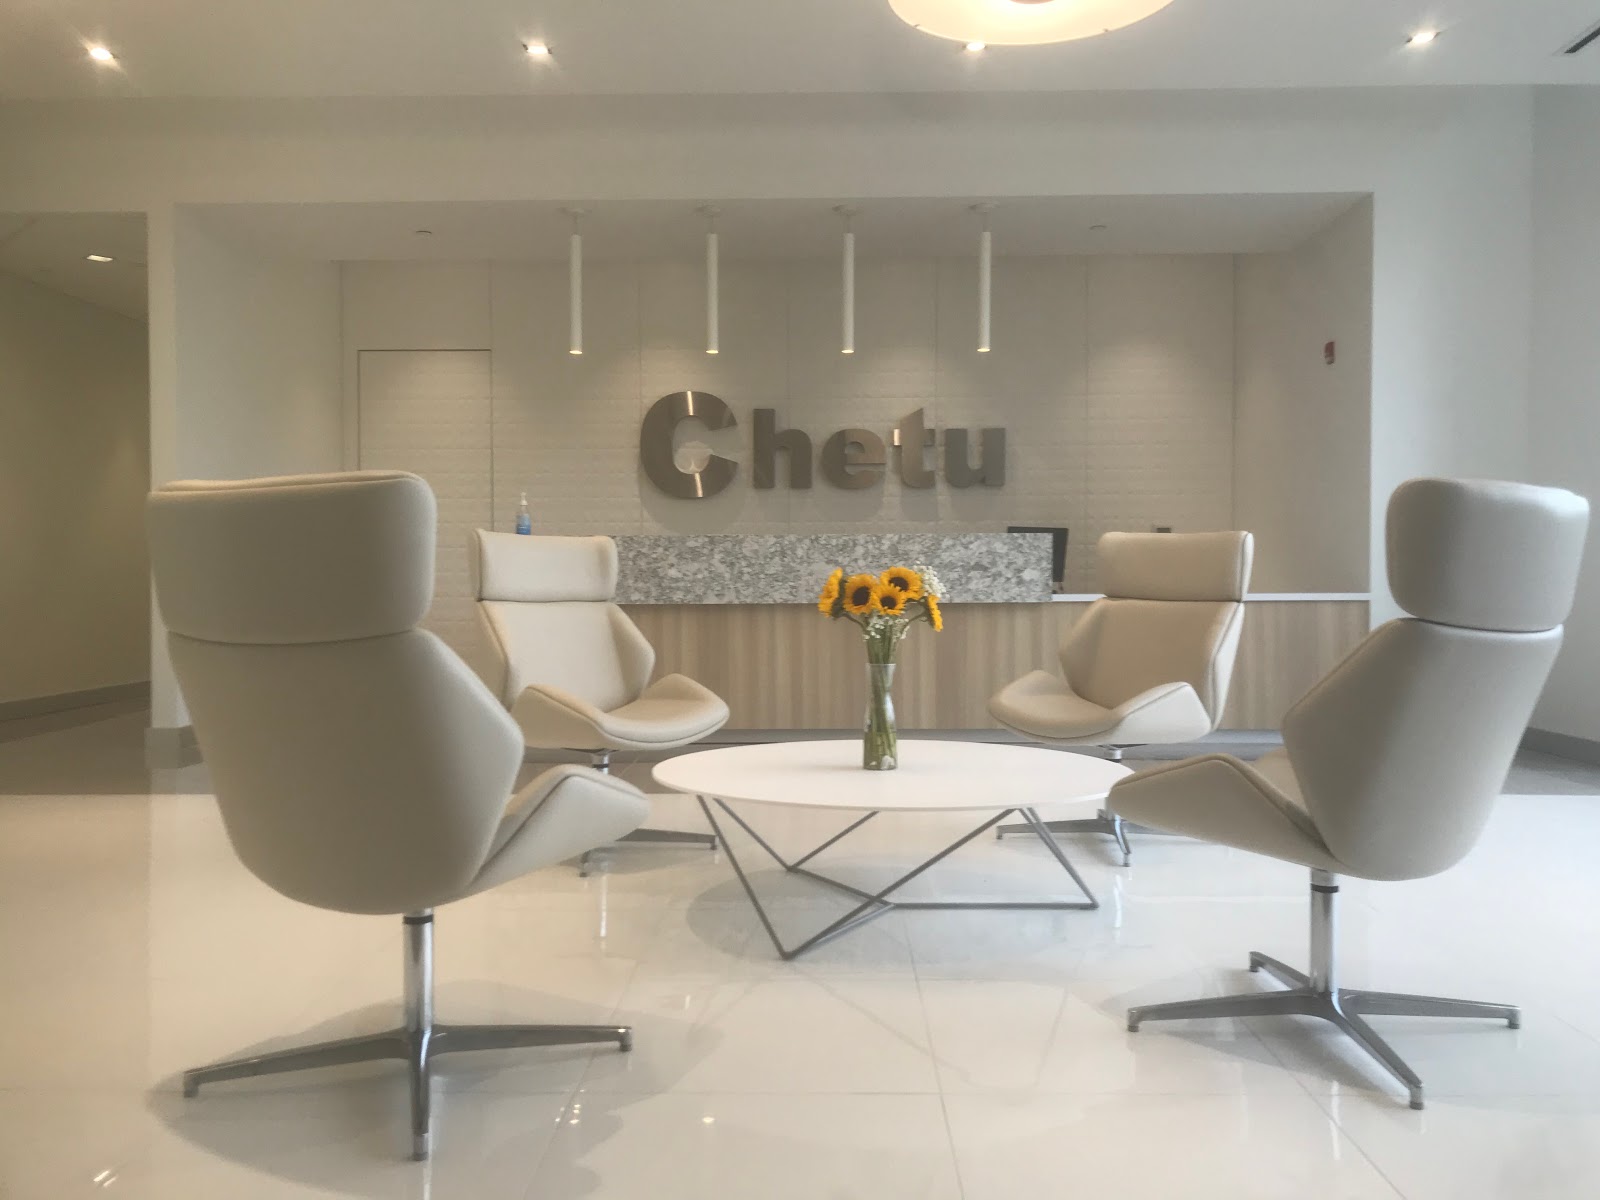 Chetu, Inc